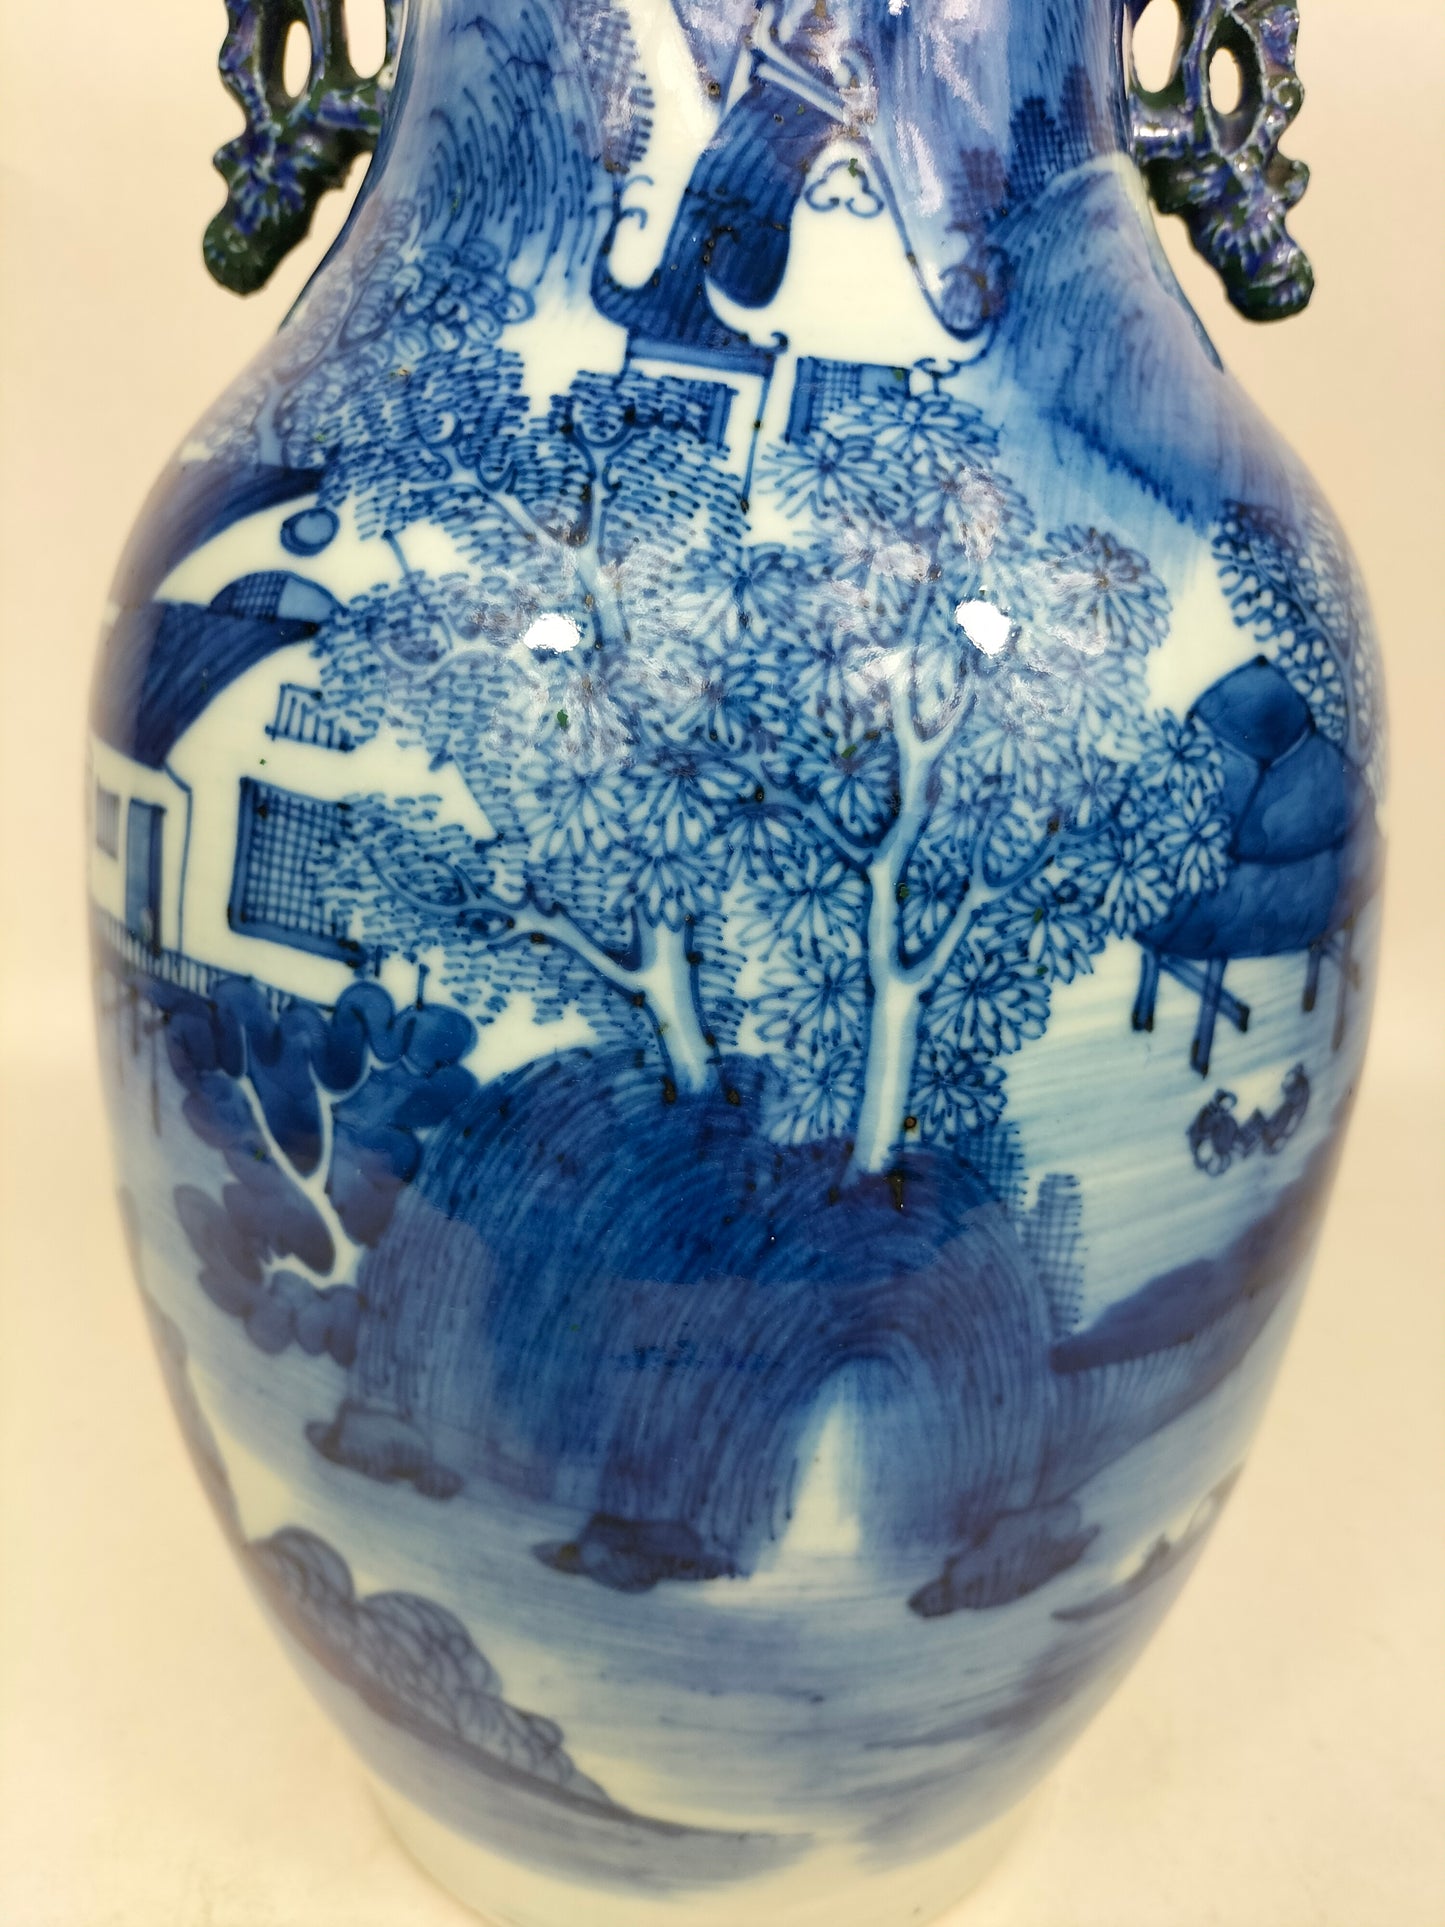 مزهرية صينية أثرية مزينة بمنظر طبيعي // أزرق وأبيض – أسرة تشينغ – القرن التاسع عشر